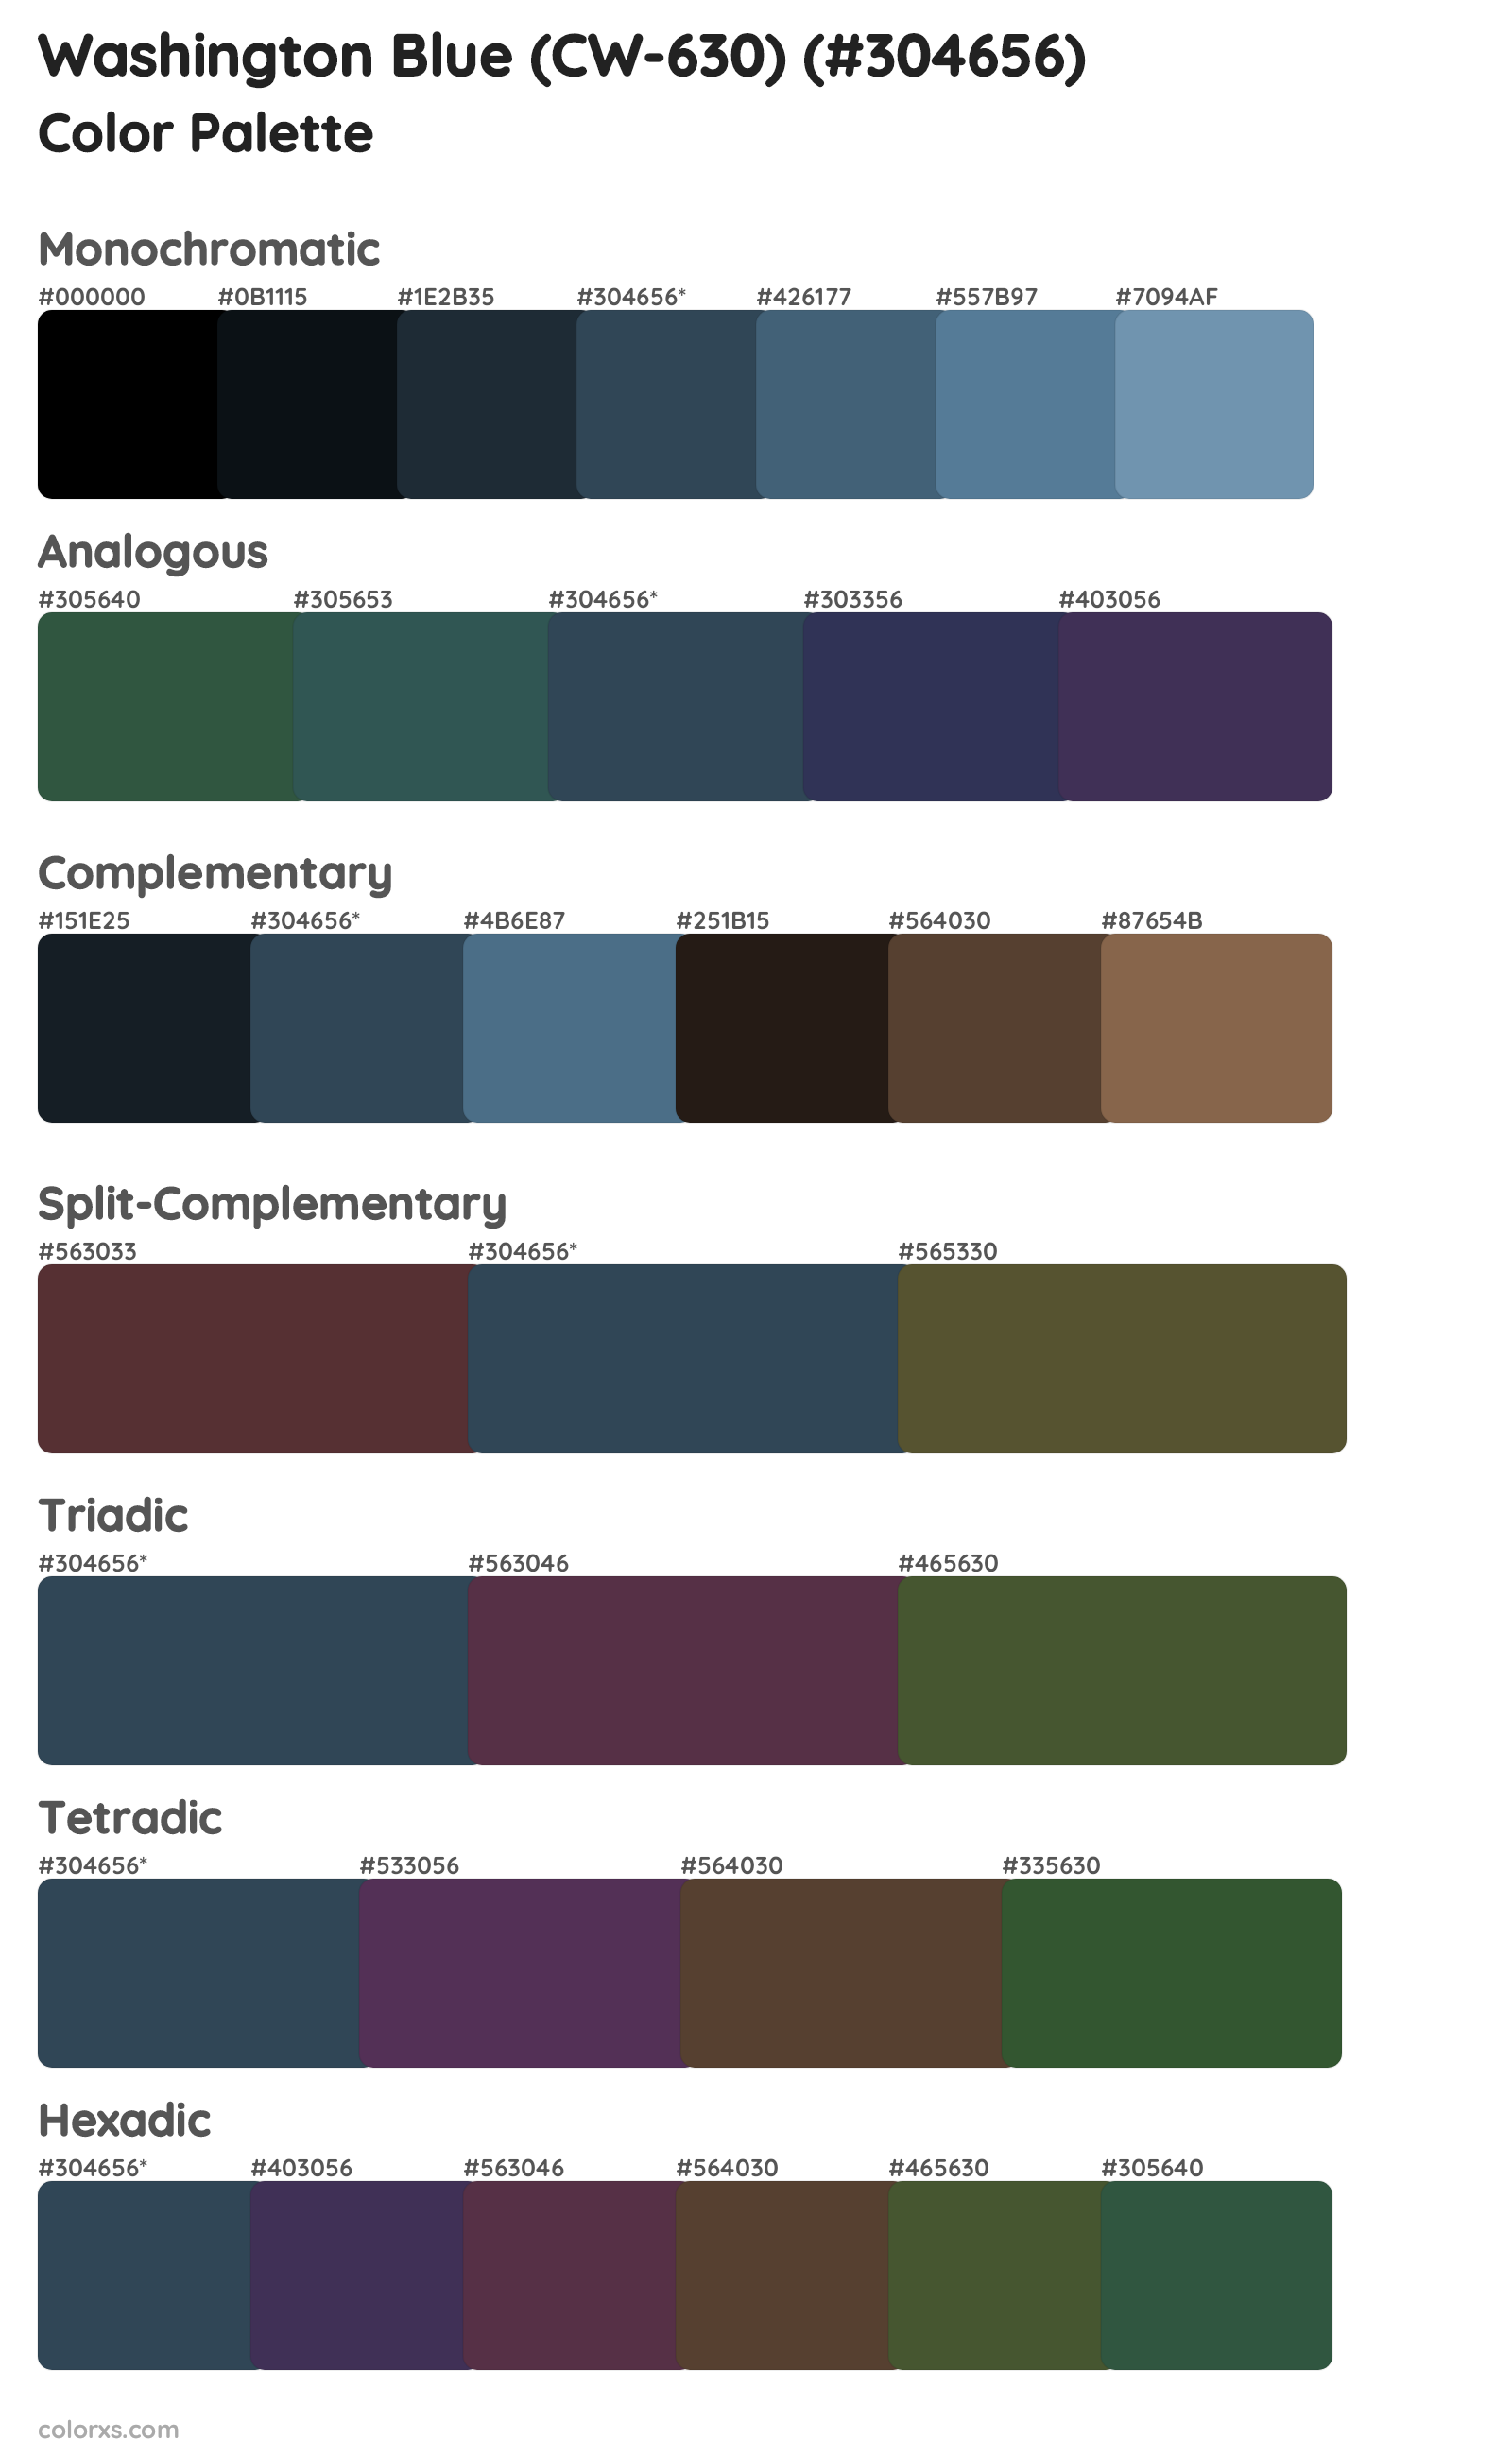 Washington Blue (CW-630) Color Scheme Palettes